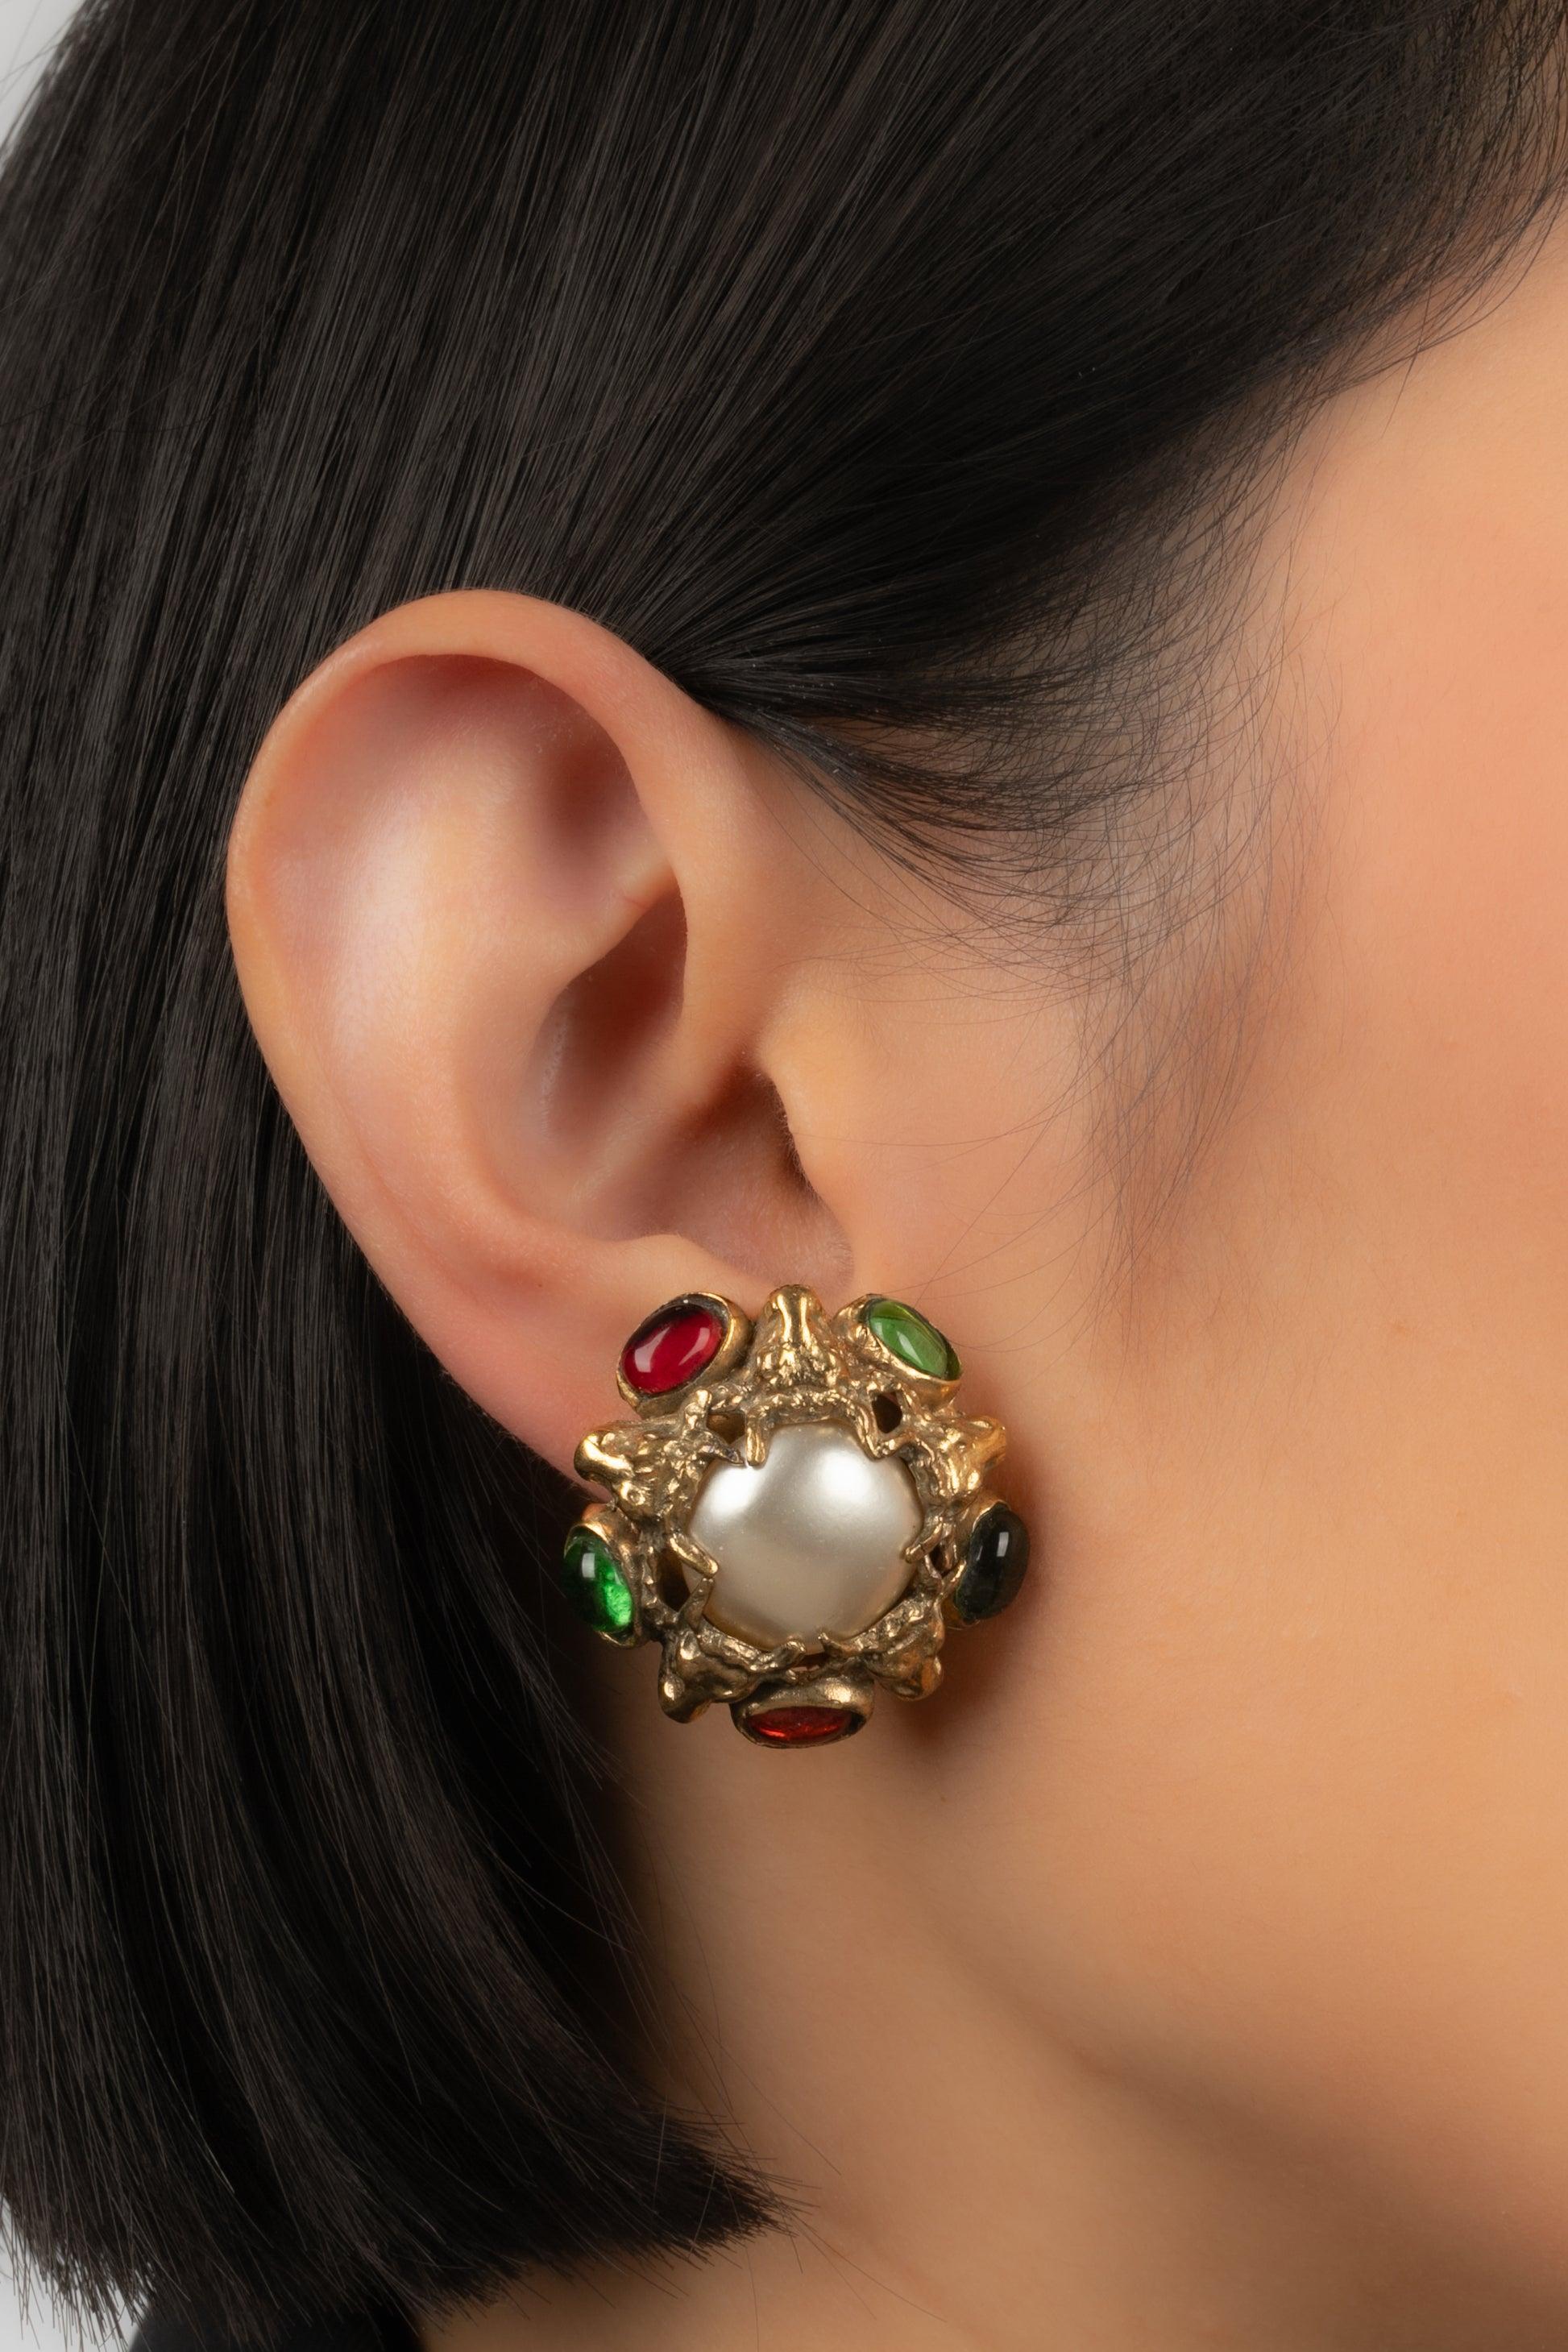 Chanel - Goldene Ohrringe mit Clipverschluss aus Metall, verziert mit einem Cabochon aus Perlen und Glaspaste.

Zusätzliche Informationen:
Zustand: Sehr guter Zustand
Abmessungen: Höhe: 3 cm

Sellers Referenz: BOB84
